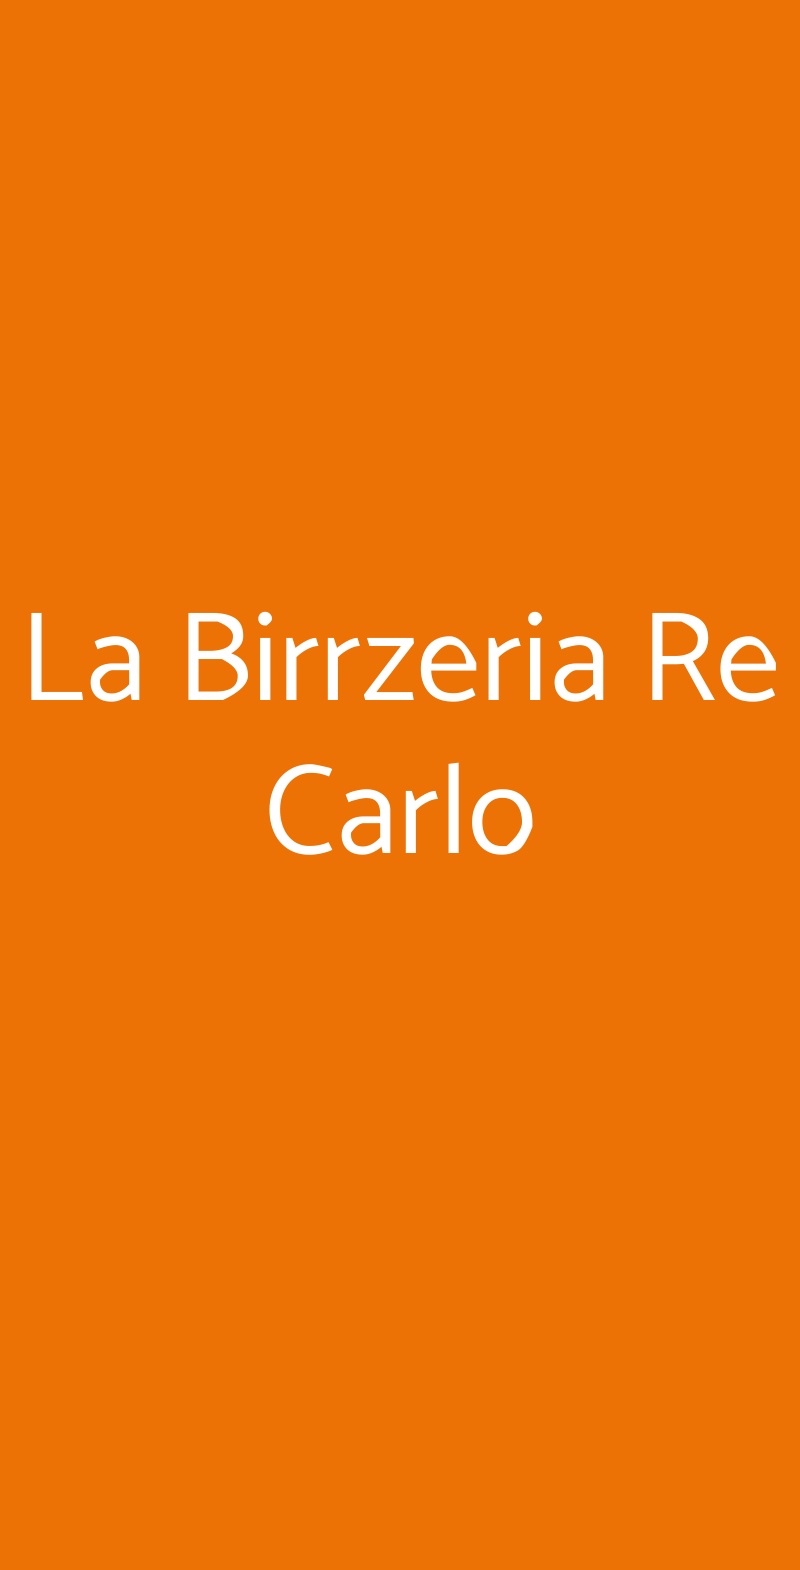 La Birrzeria Re Carlo Napoli menù 1 pagina